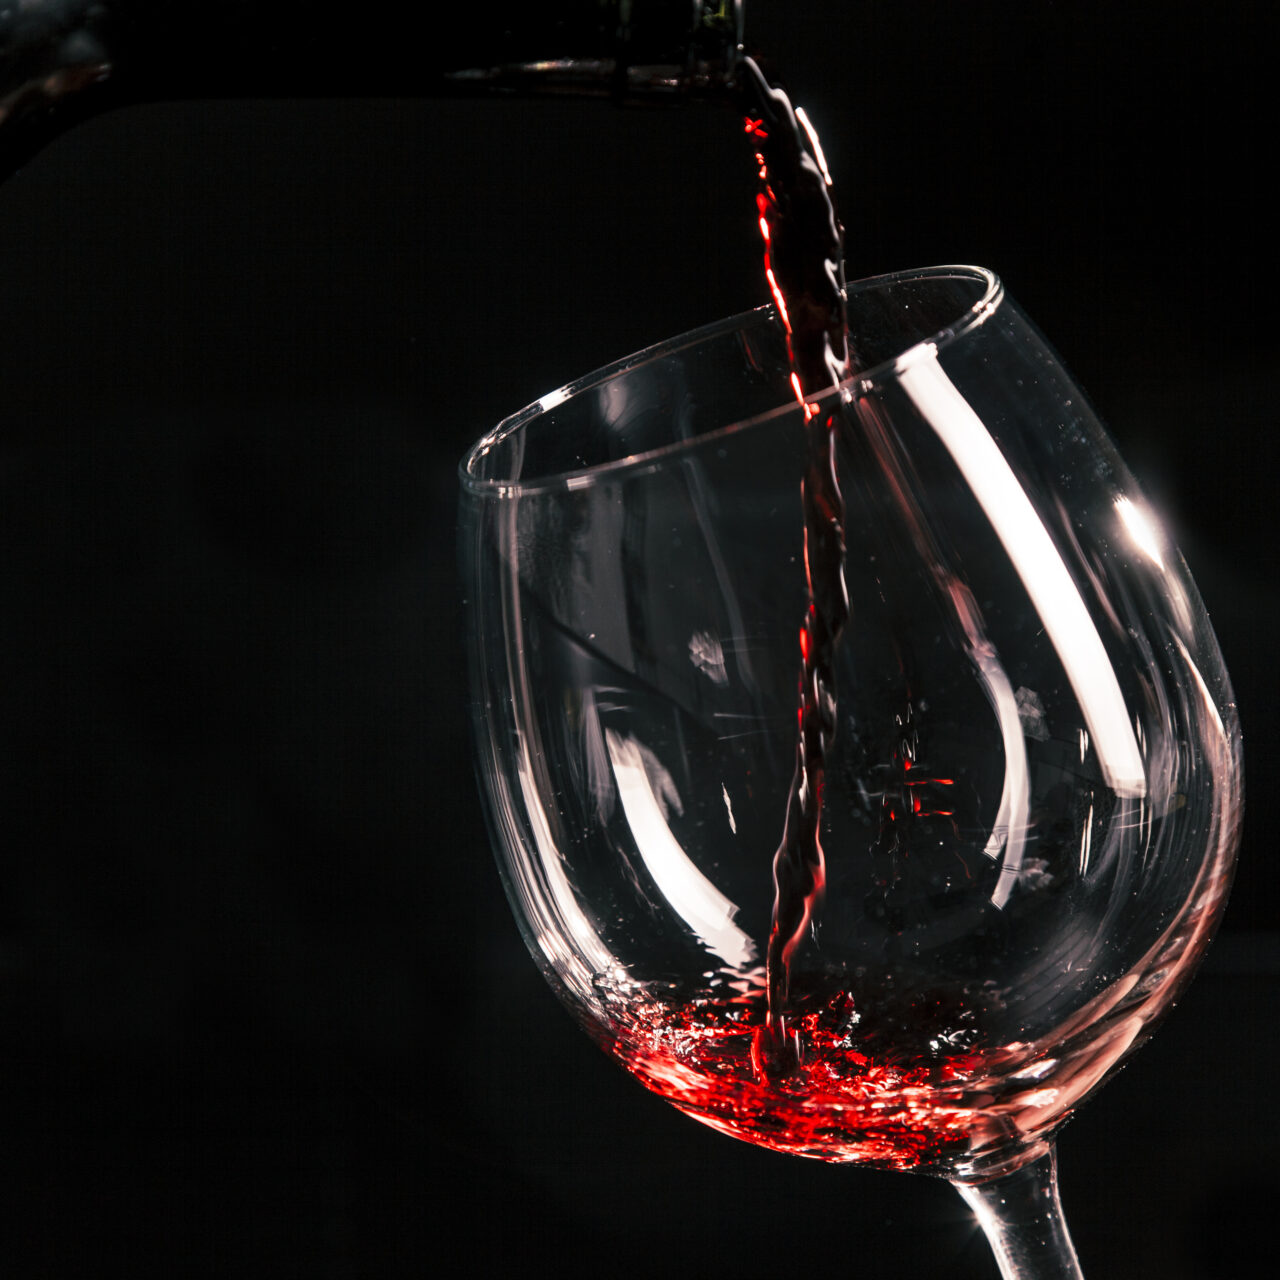 PERCORSO CONOSCITIVO DI 4 SERATE, SUL VINO E I SUOI SEGRETI close up wine pouring into glass